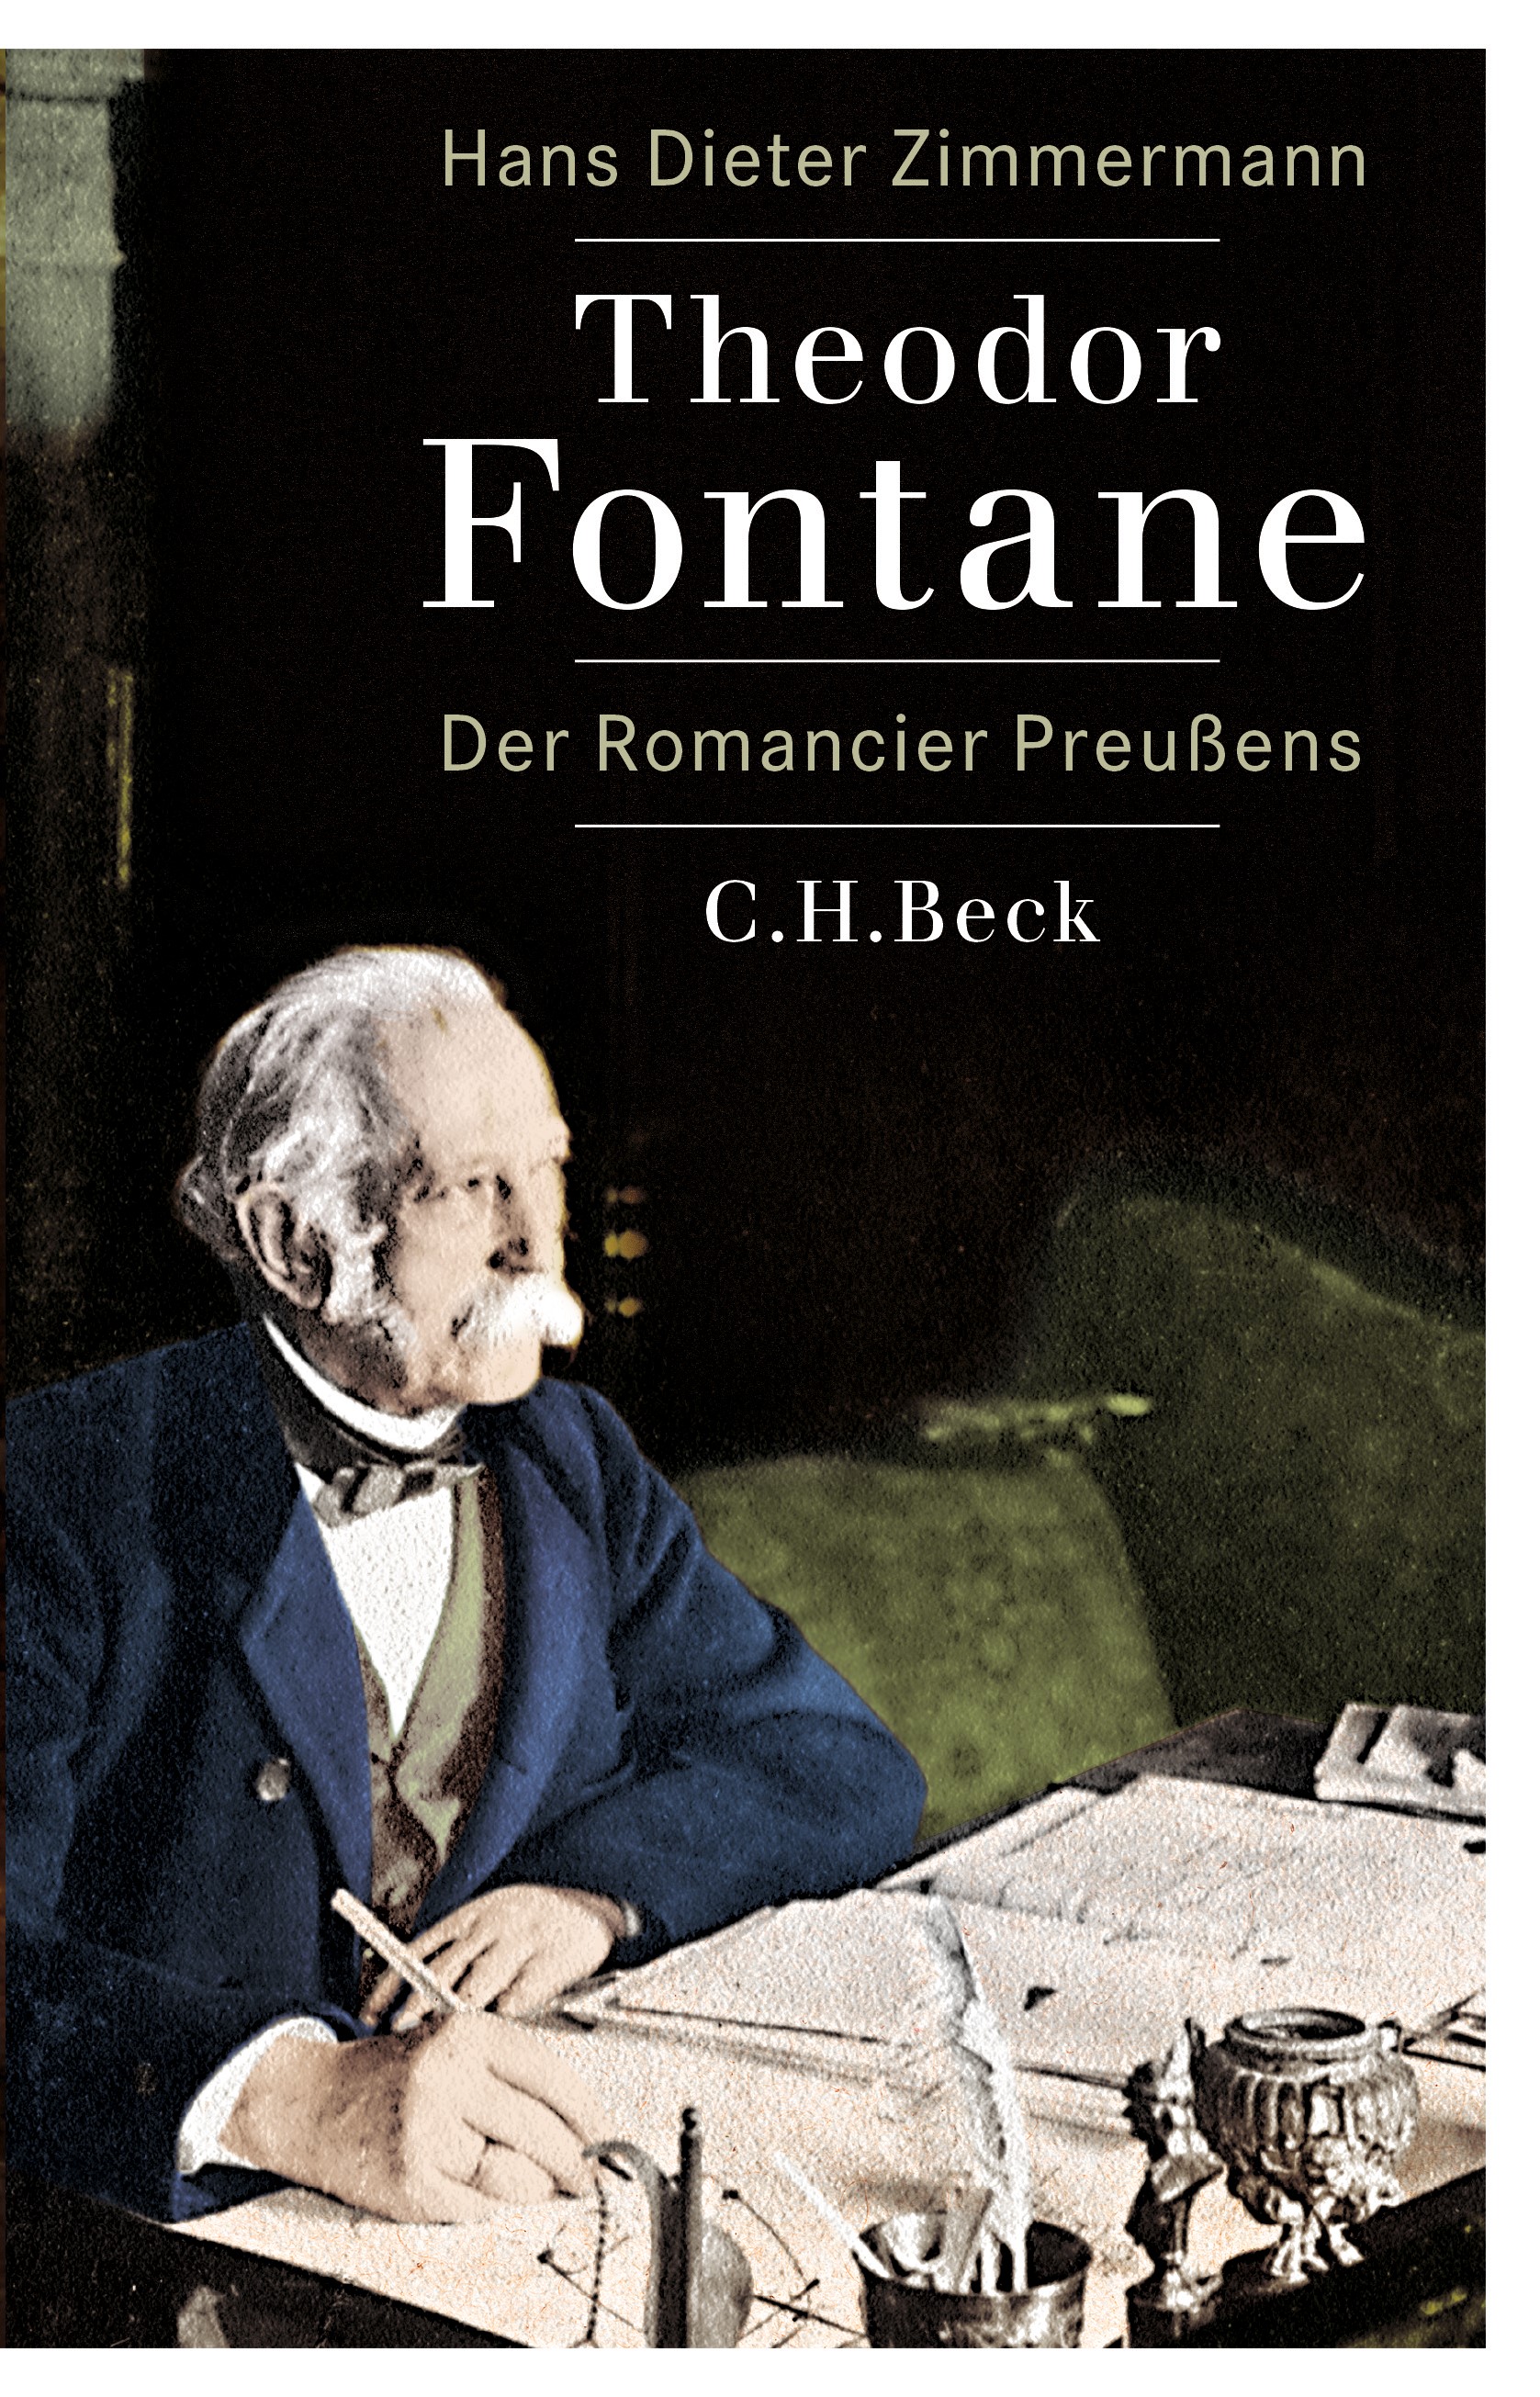 Cover: Zimmermann, Hans Dieter, Theodor Fontane